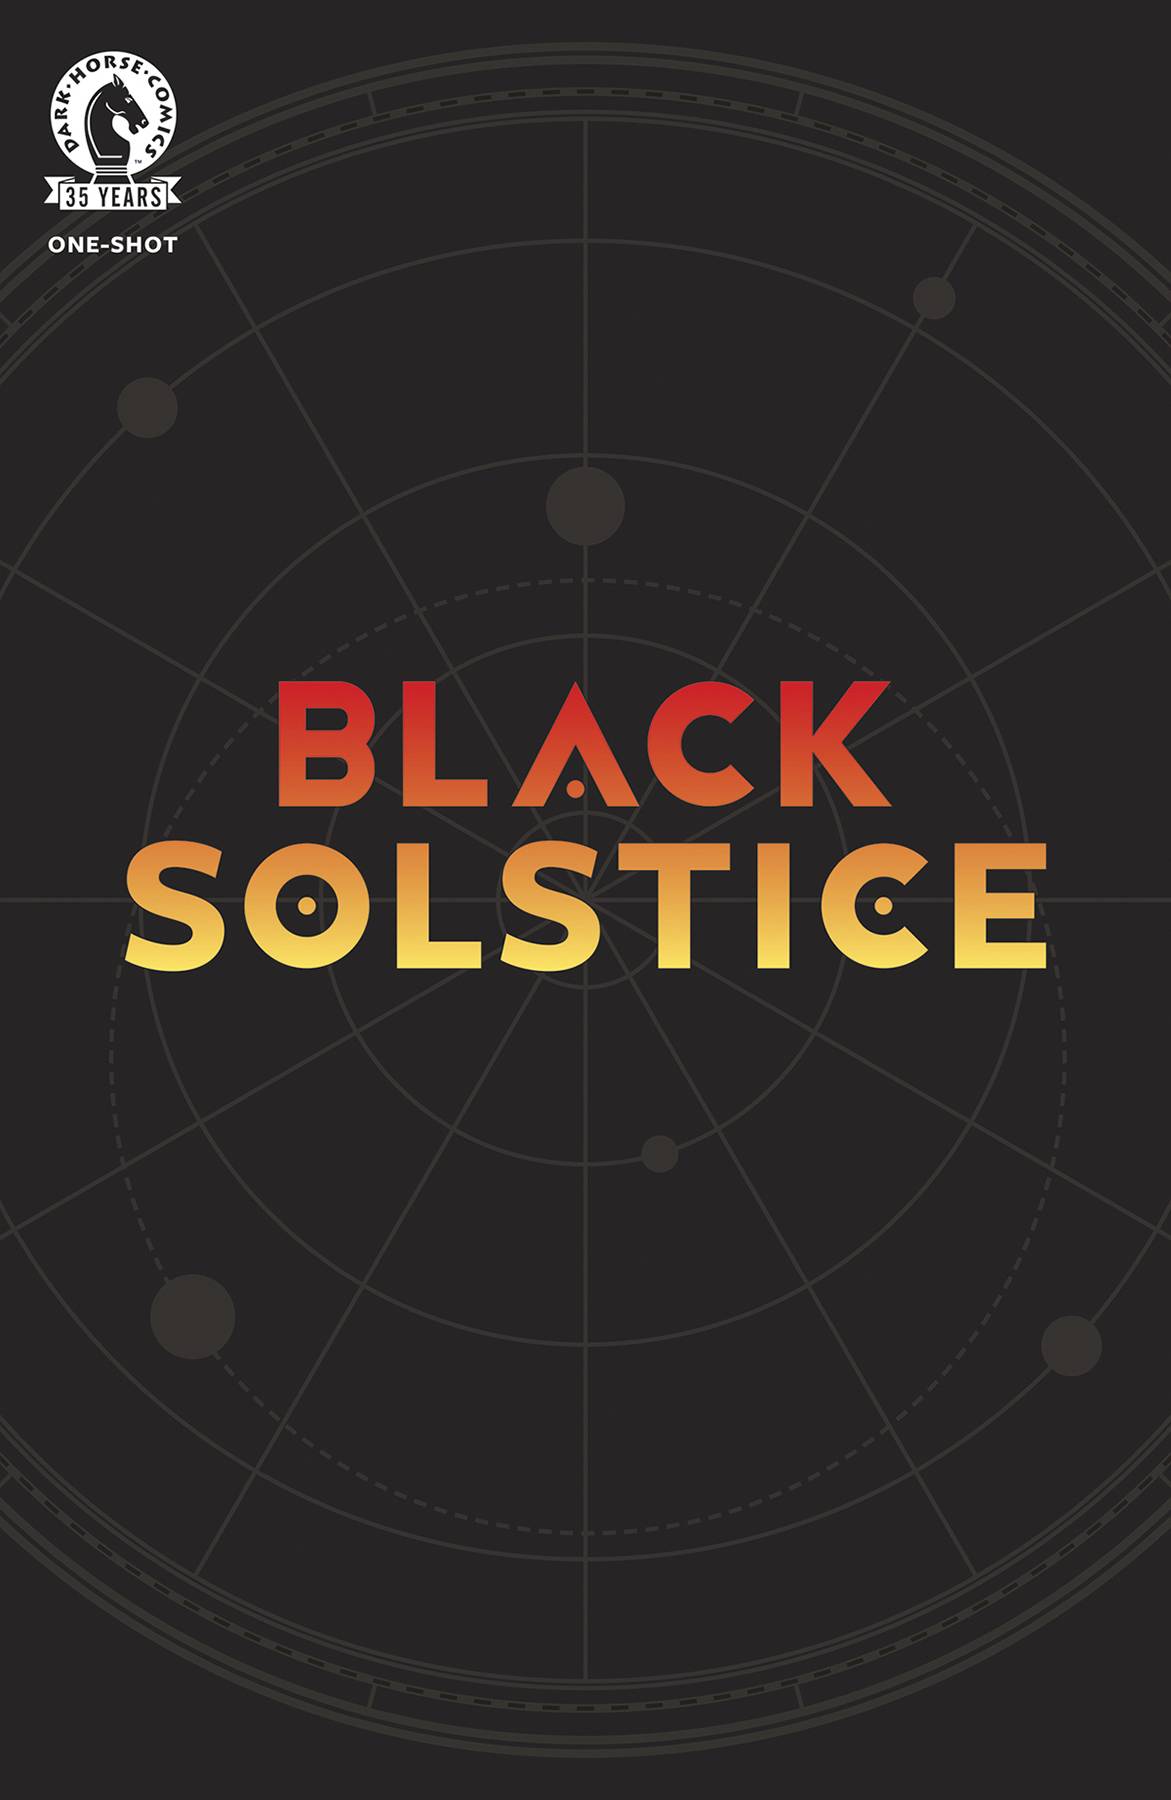 BLACK SOLSTICE ONE-SHOT